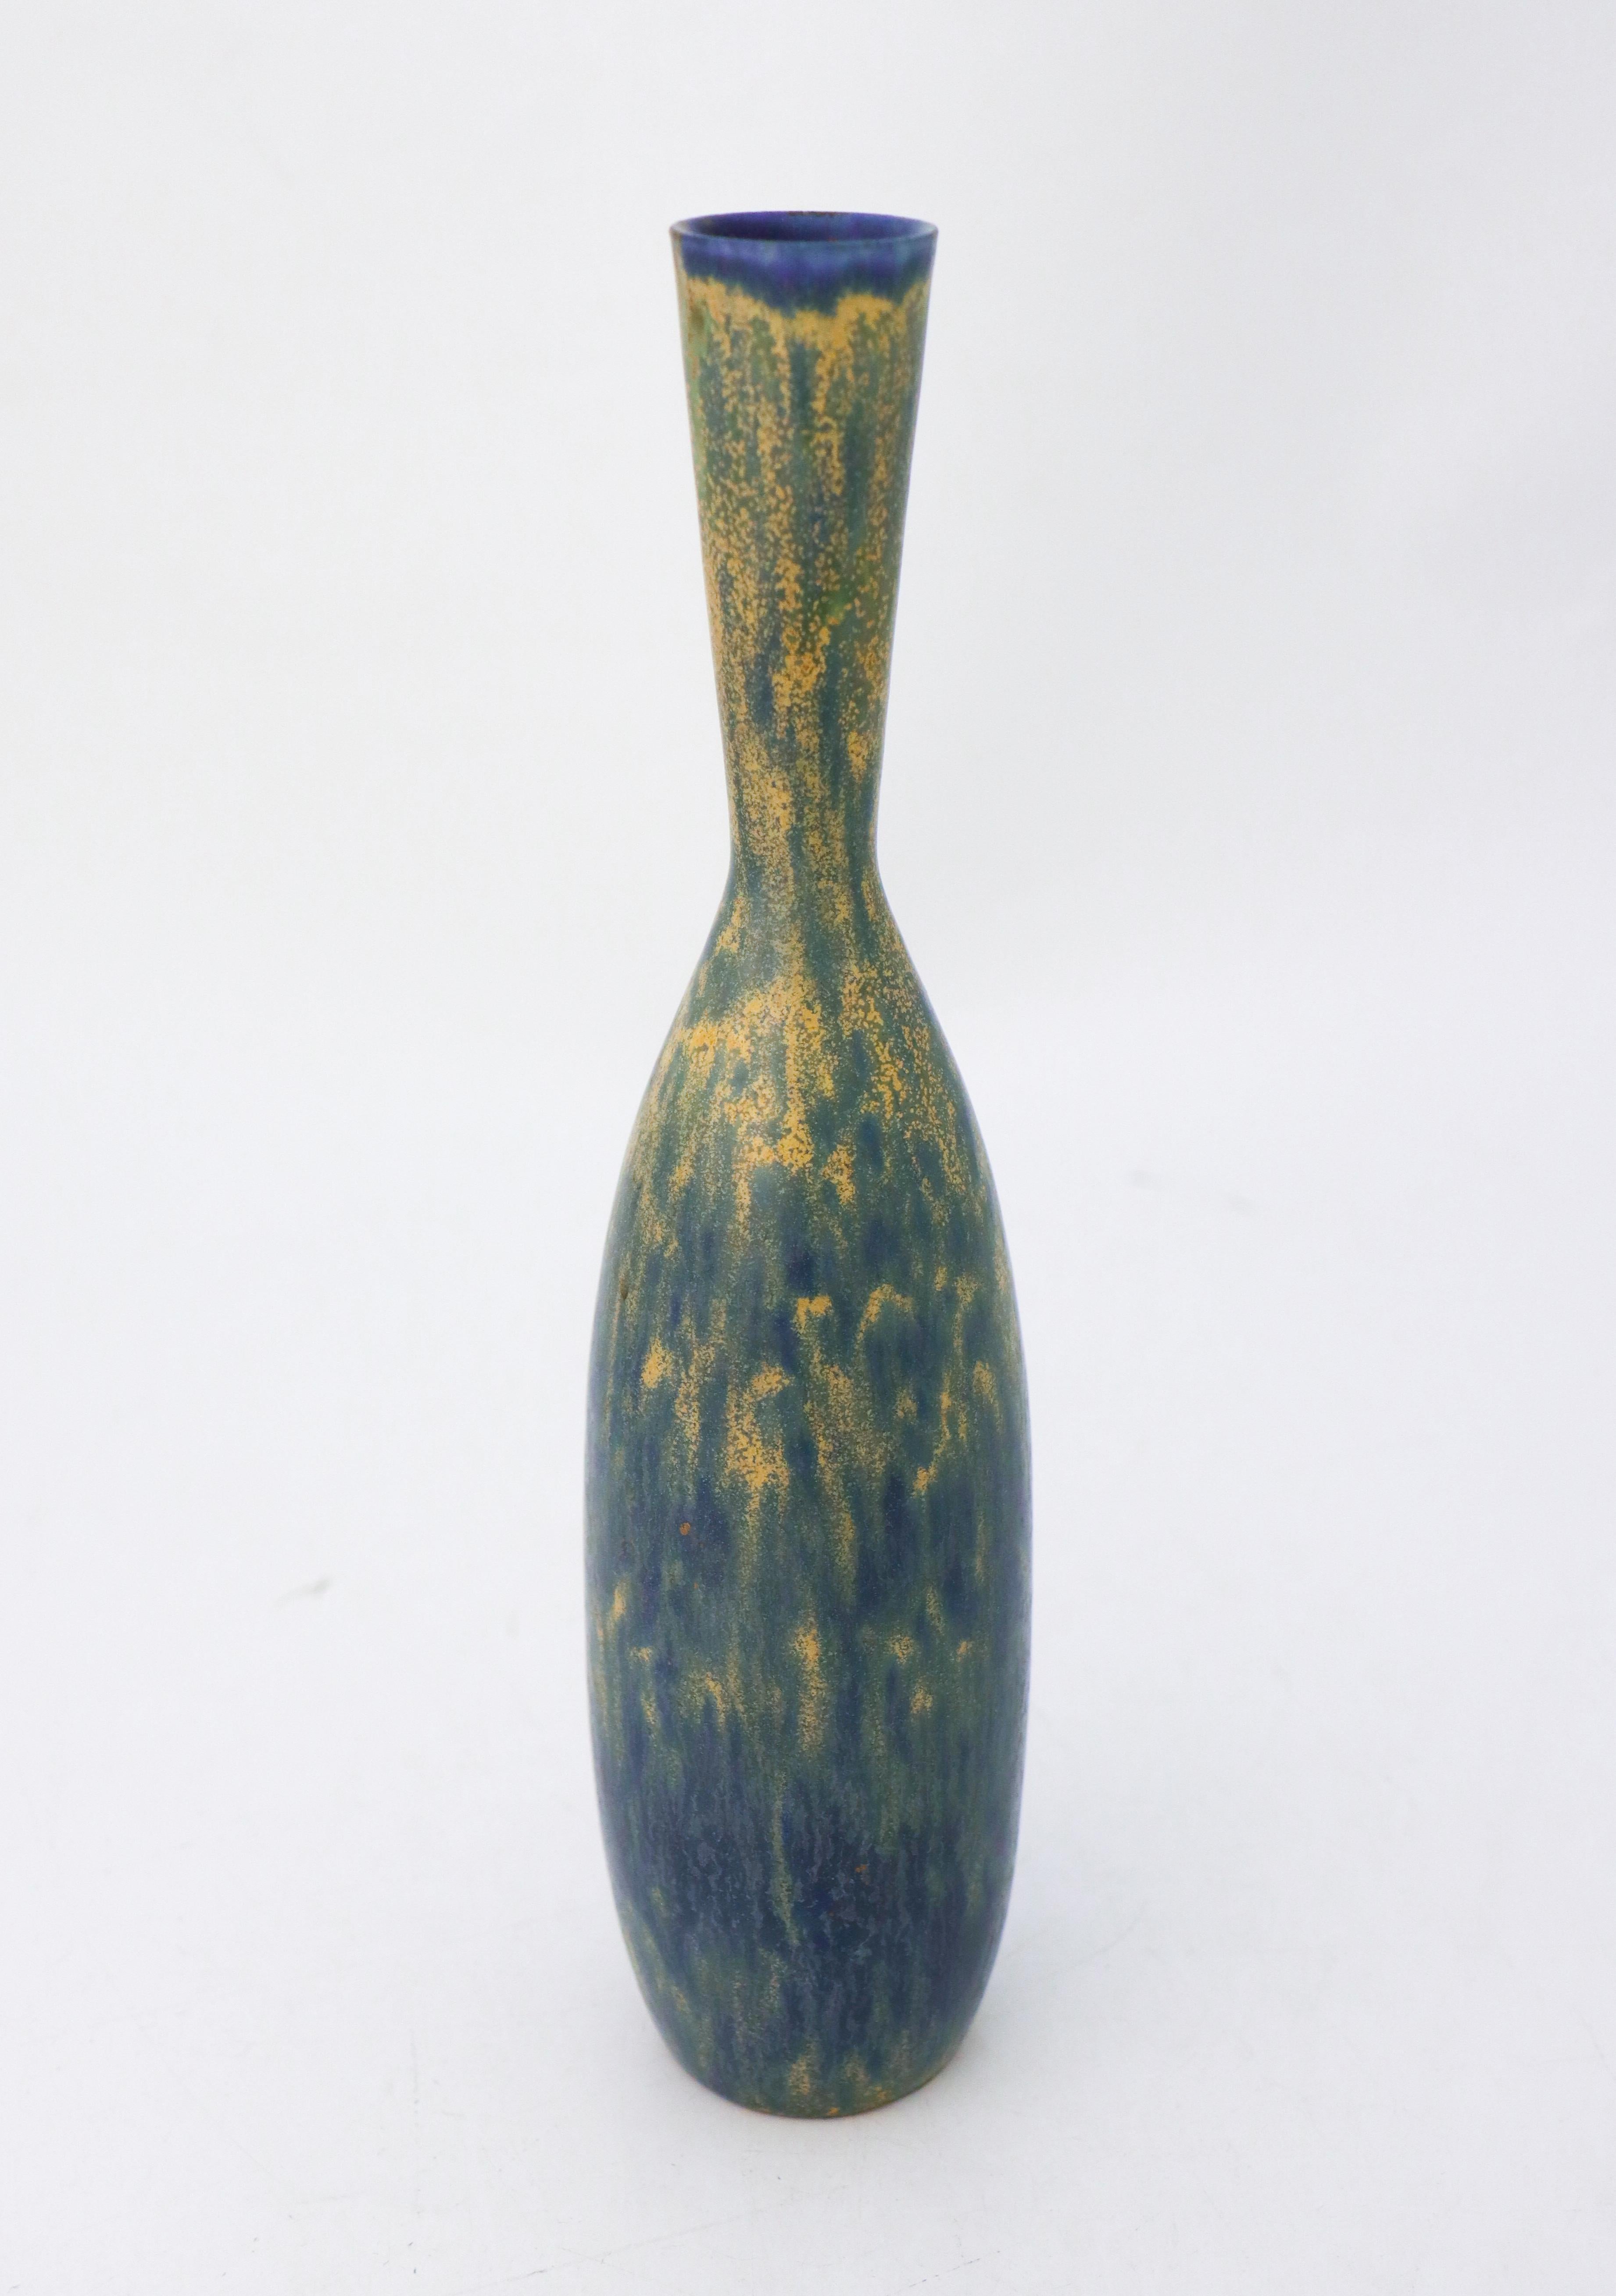 Glazed Lovely Yellow & Blue Ceramic Vase - Carl-Harry Stålhane - Rörstrand For Sale